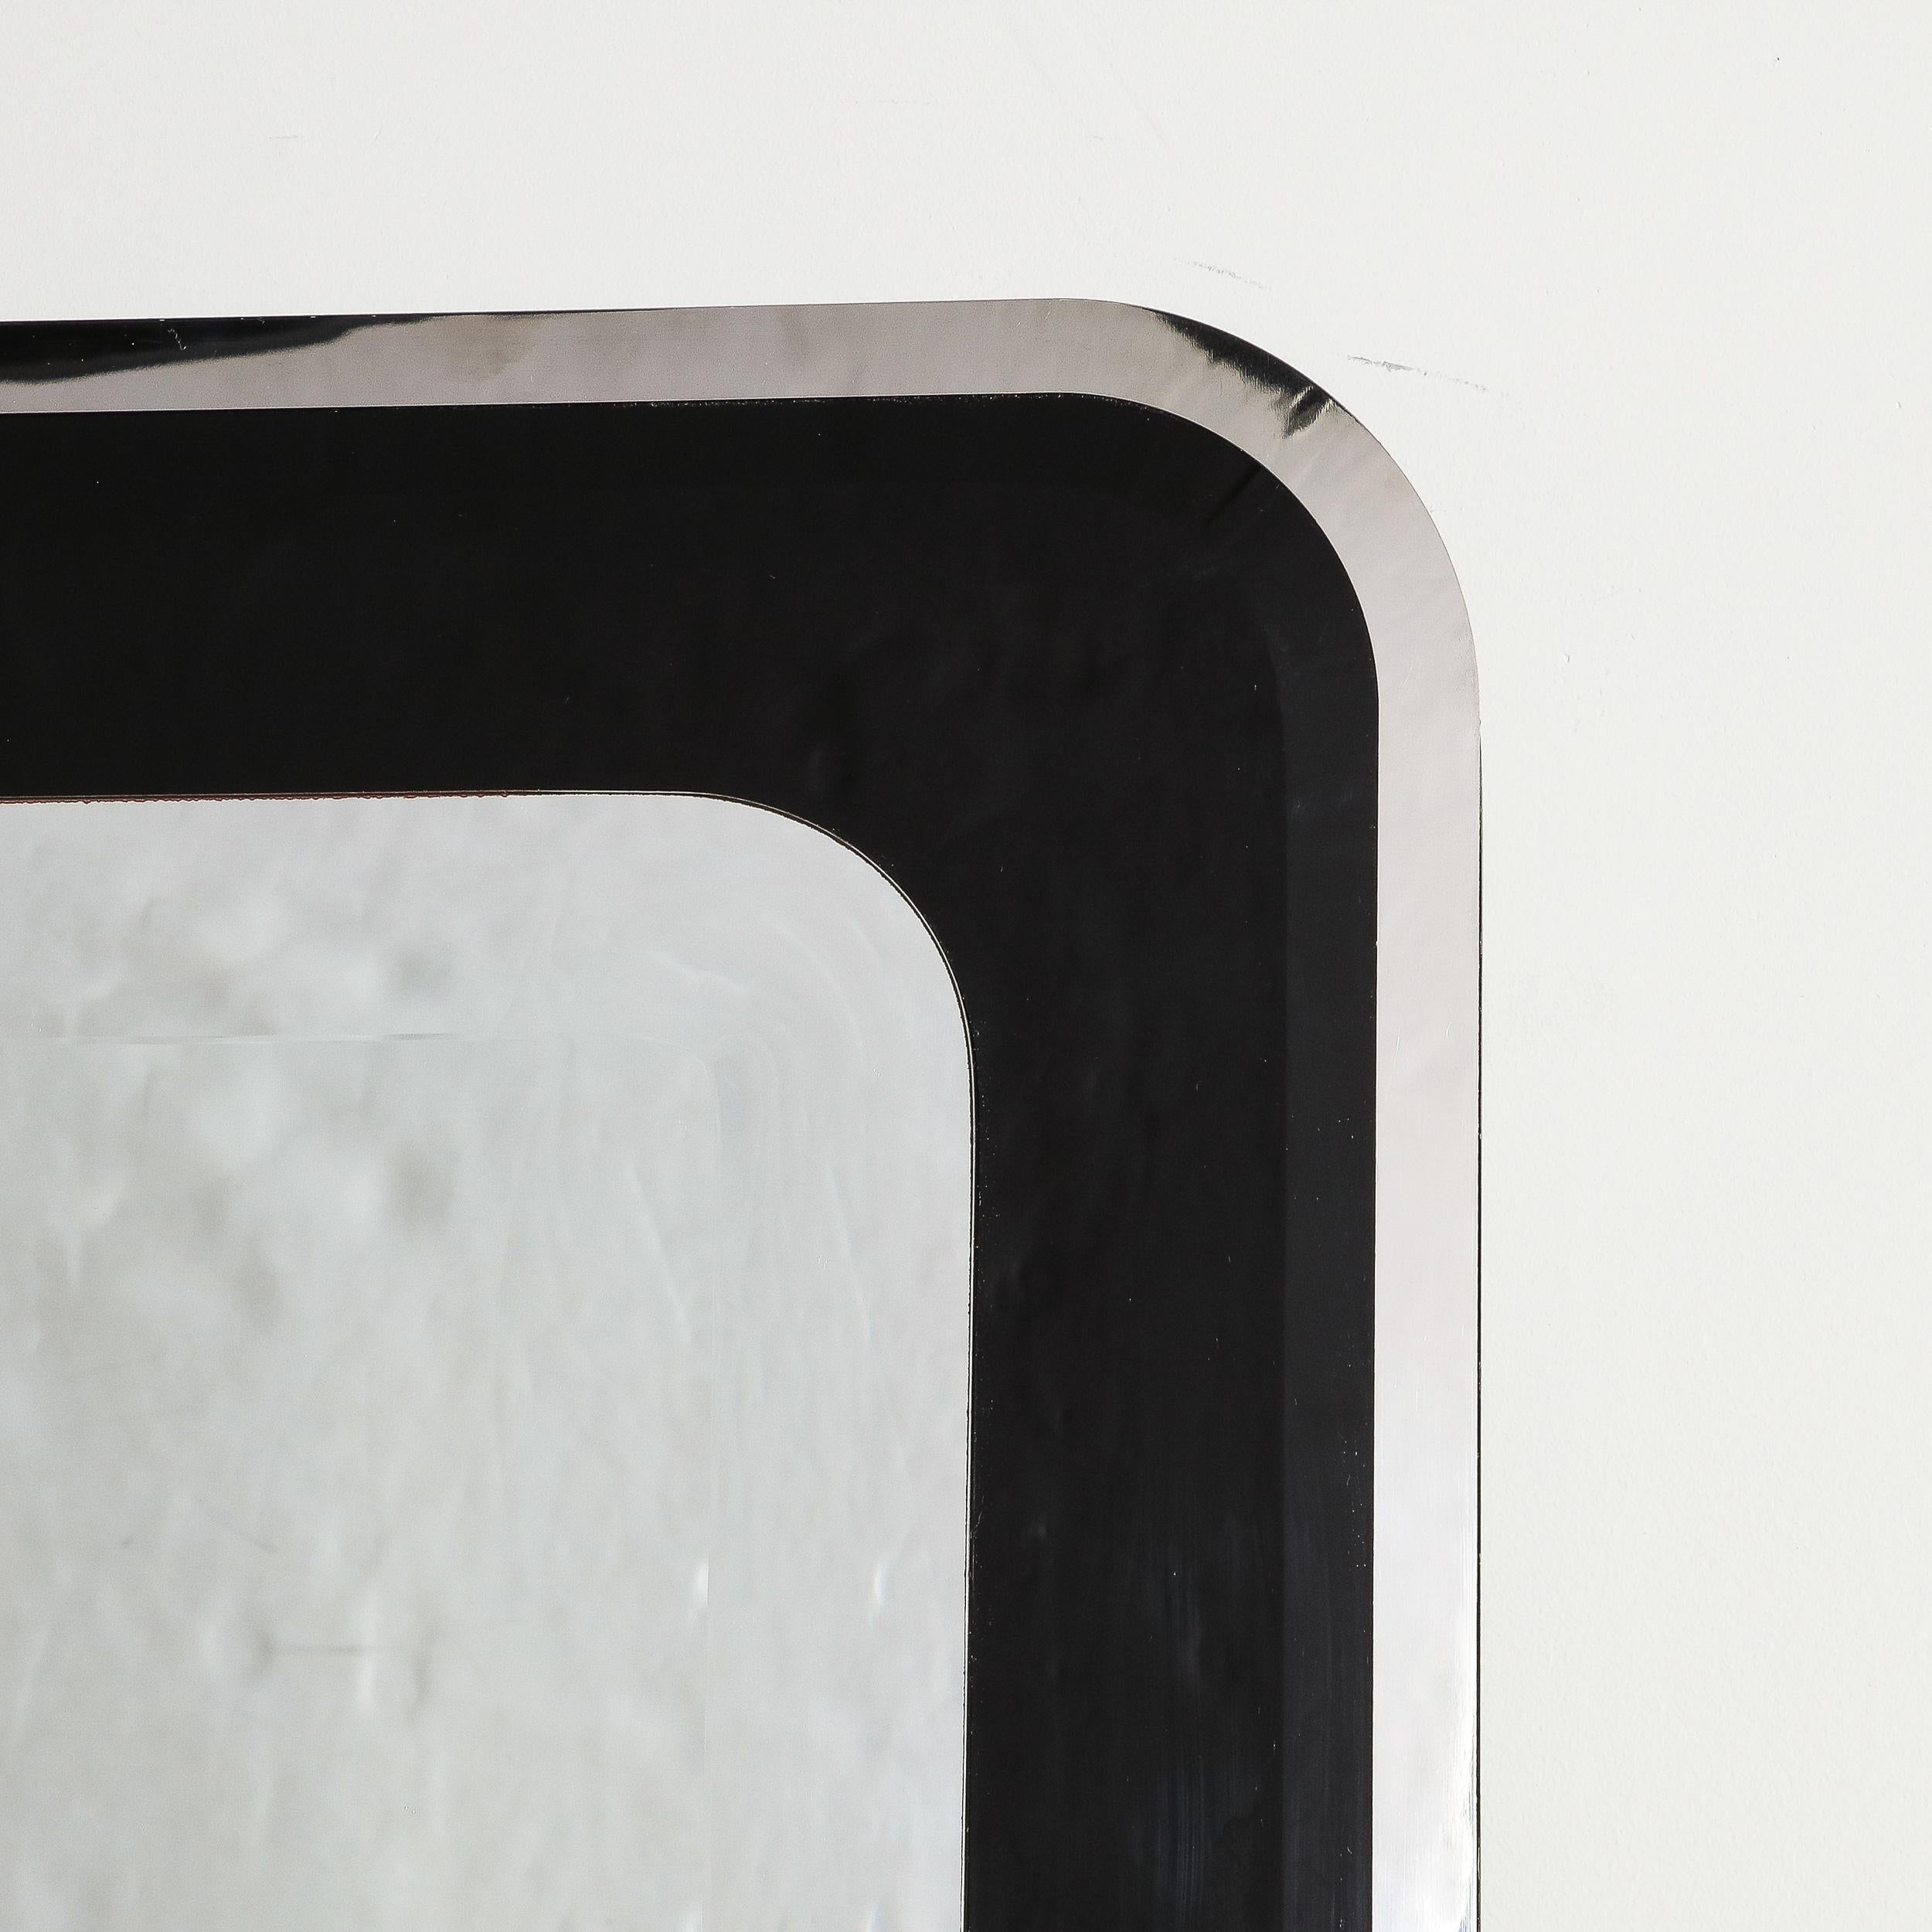 Late 20th Century Modernist Streamlined Black Vitrolite Beveled Banded Mirror by Karl Springer